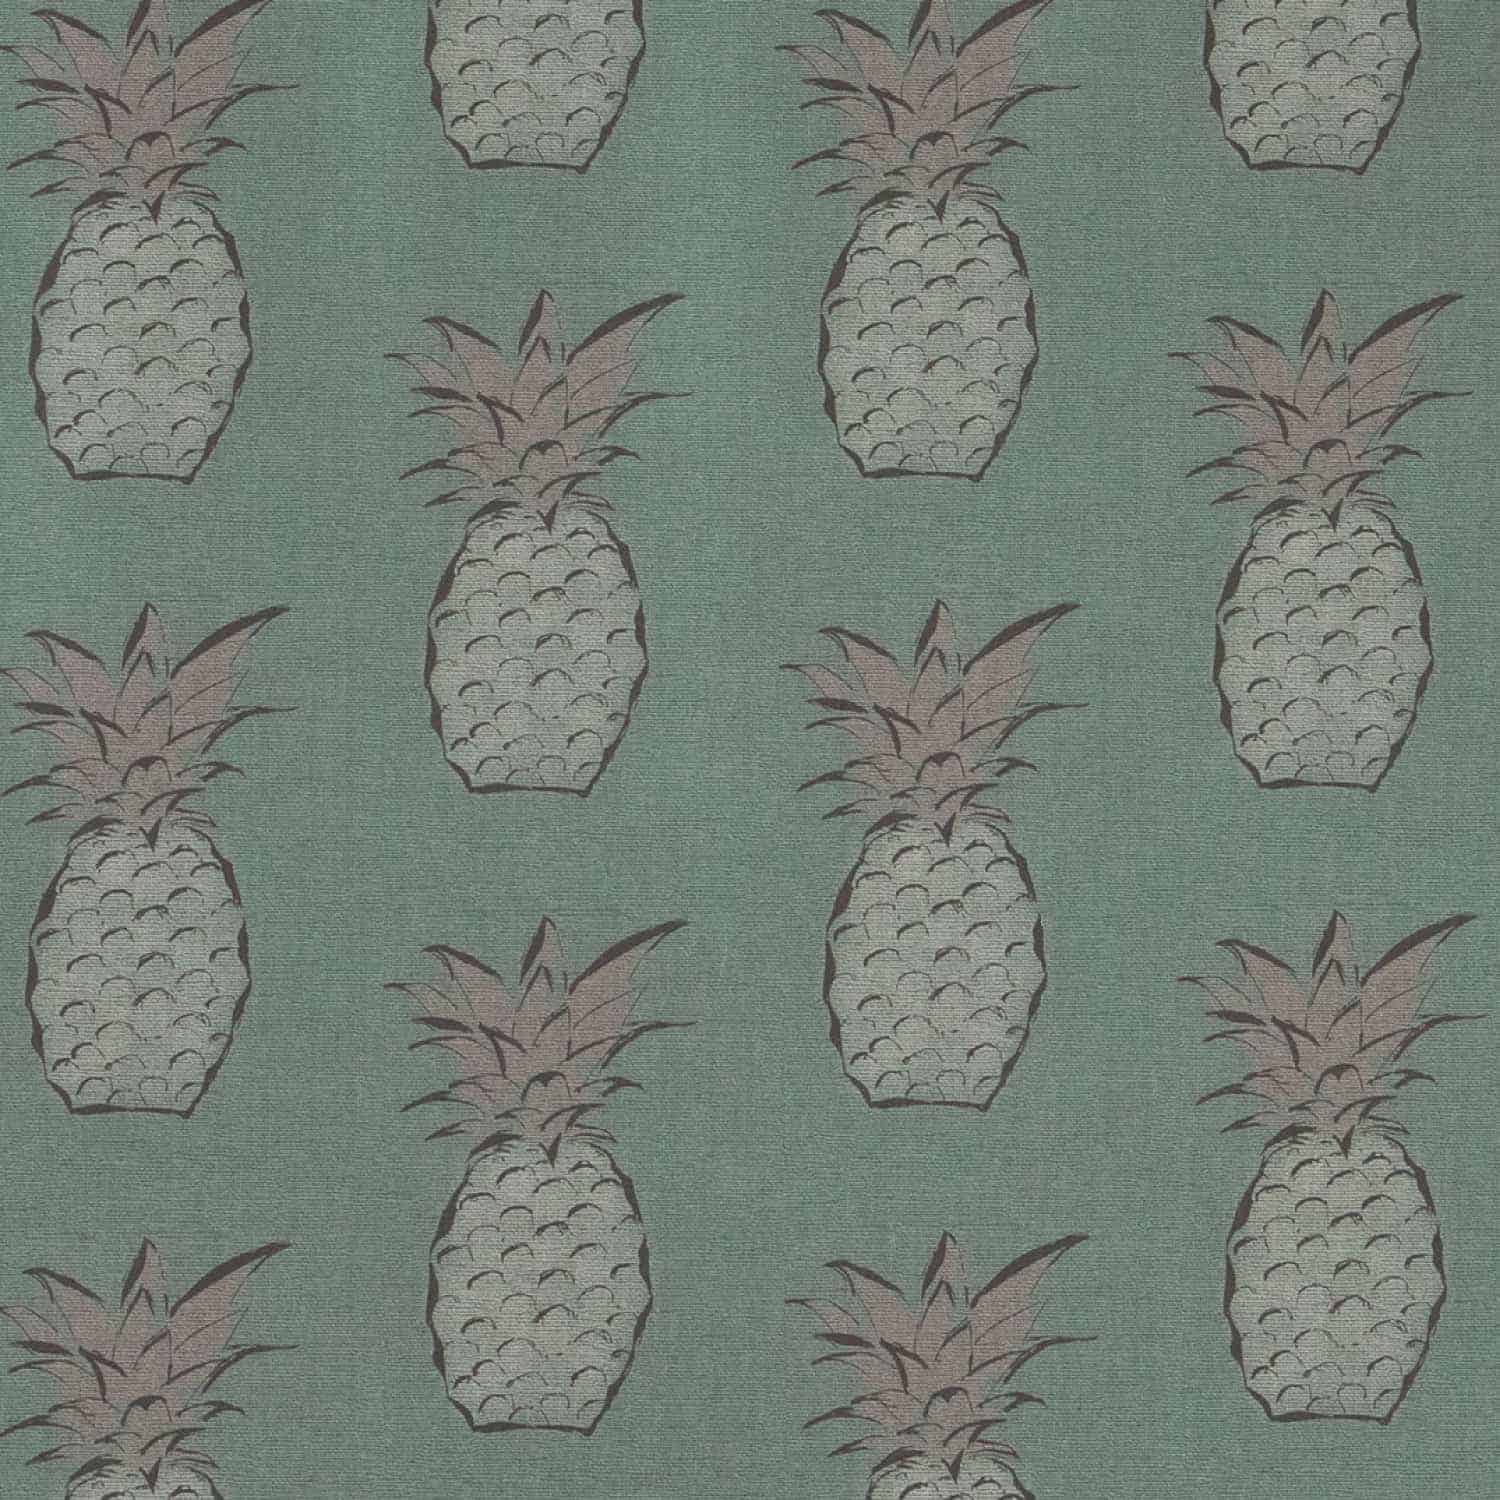 Pineapple Wallpaper - Annie Allison